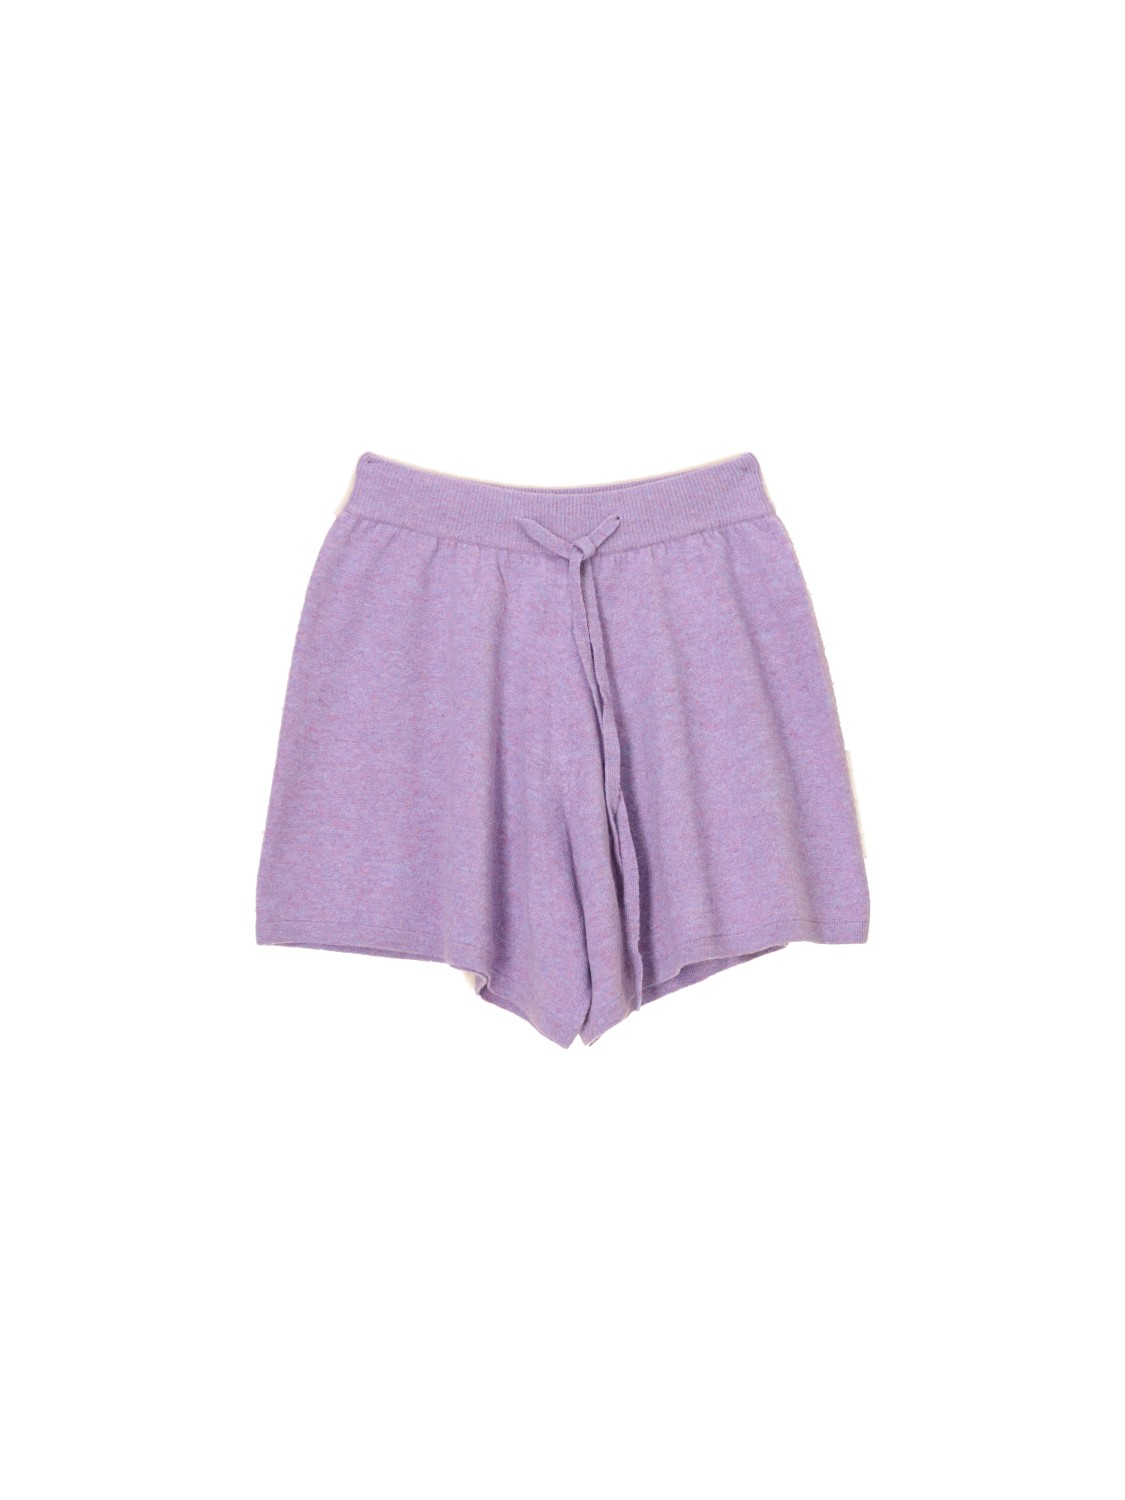 Gio - Cashmere melange shorts 